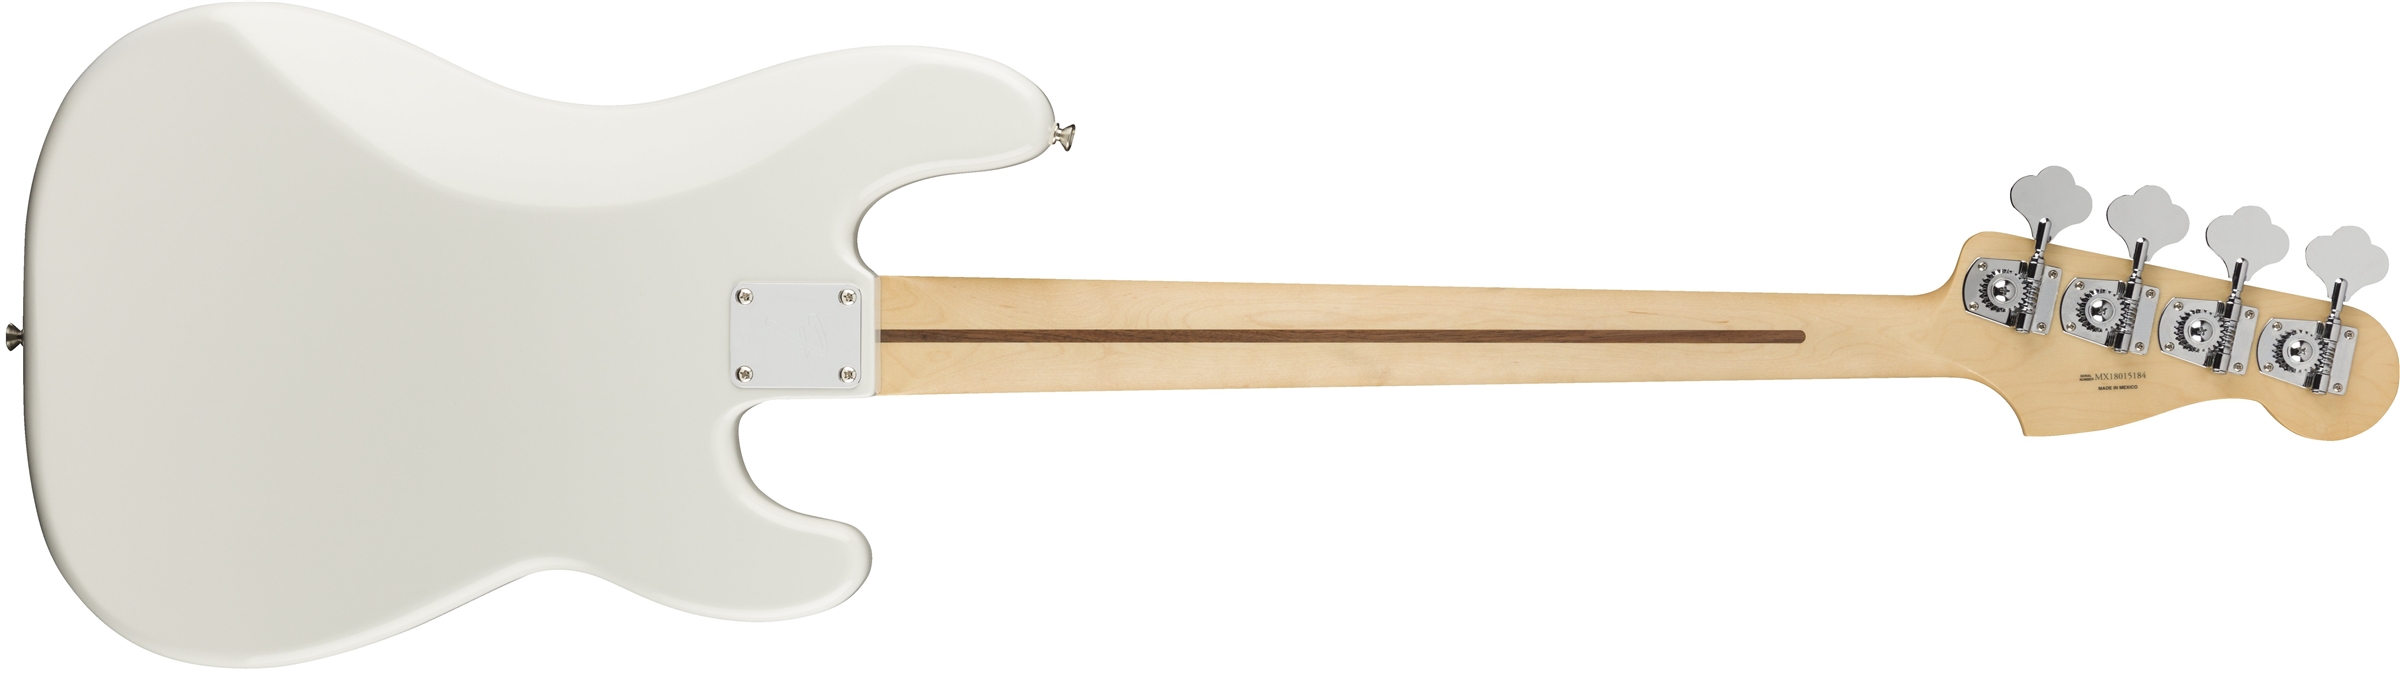 Fender Precision Bass Player Lh Gaucher Mex Pf - Polar White - Solid body elektrische bas - Variation 1